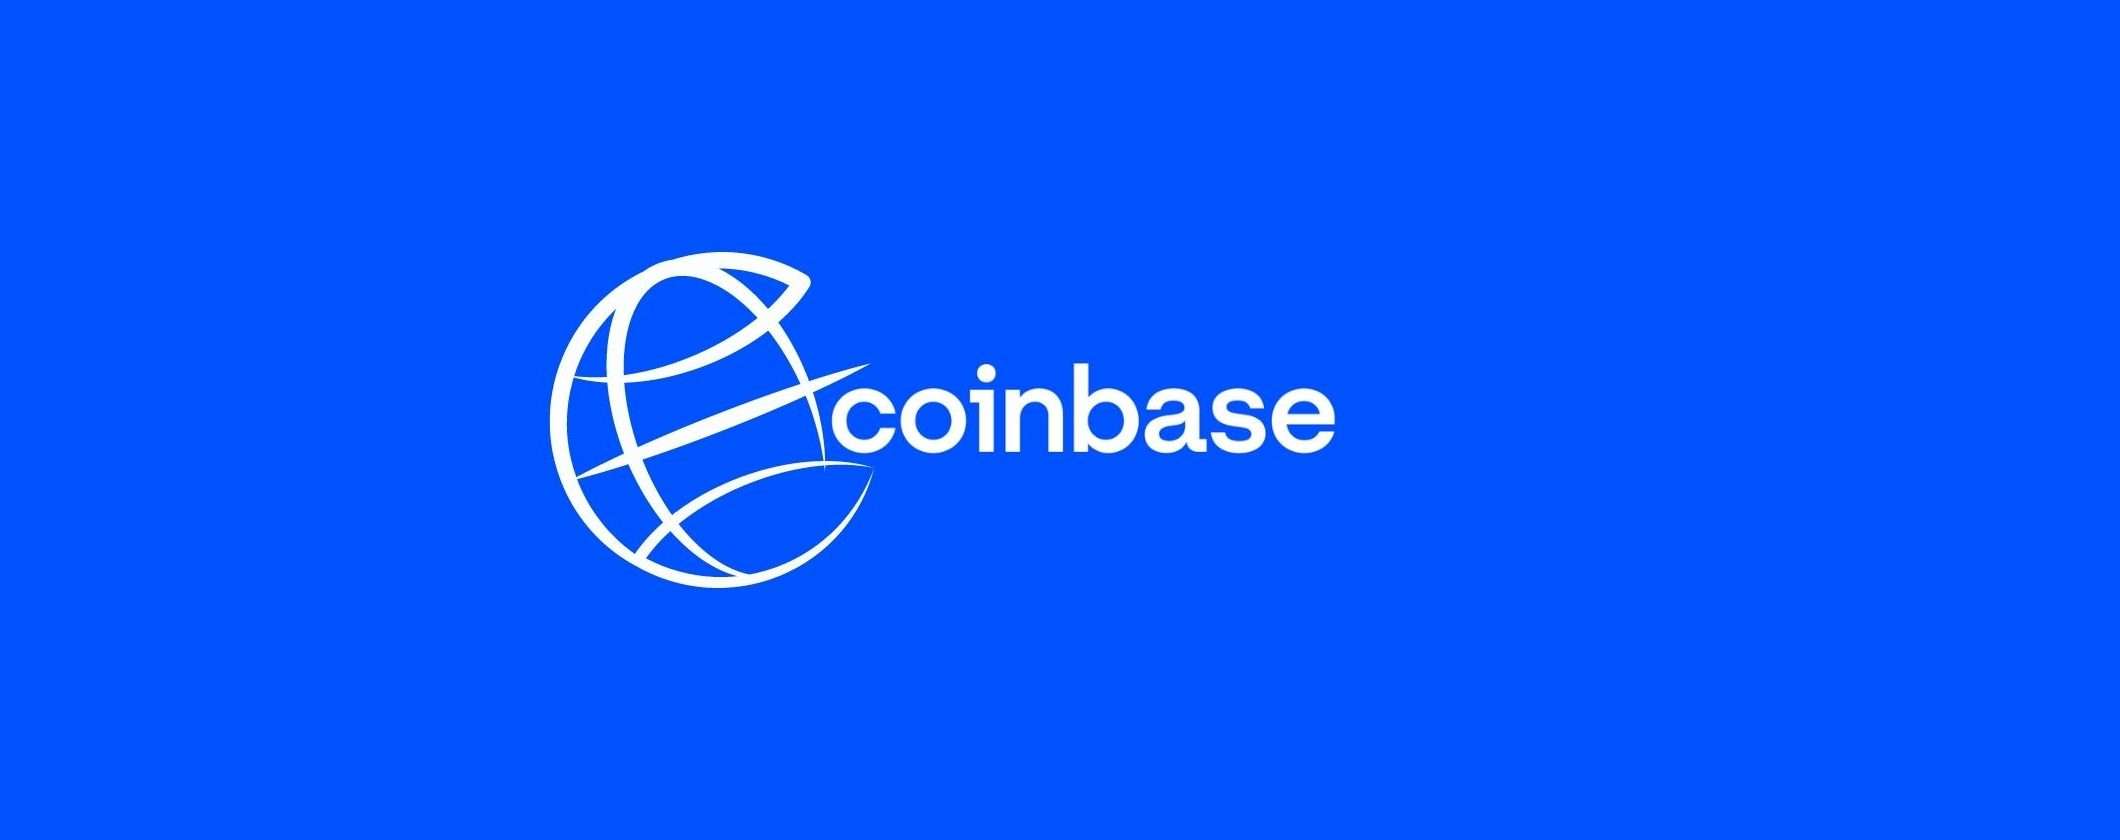 Coinbase ha un piano: integrare le criptovalute in ogni azienda